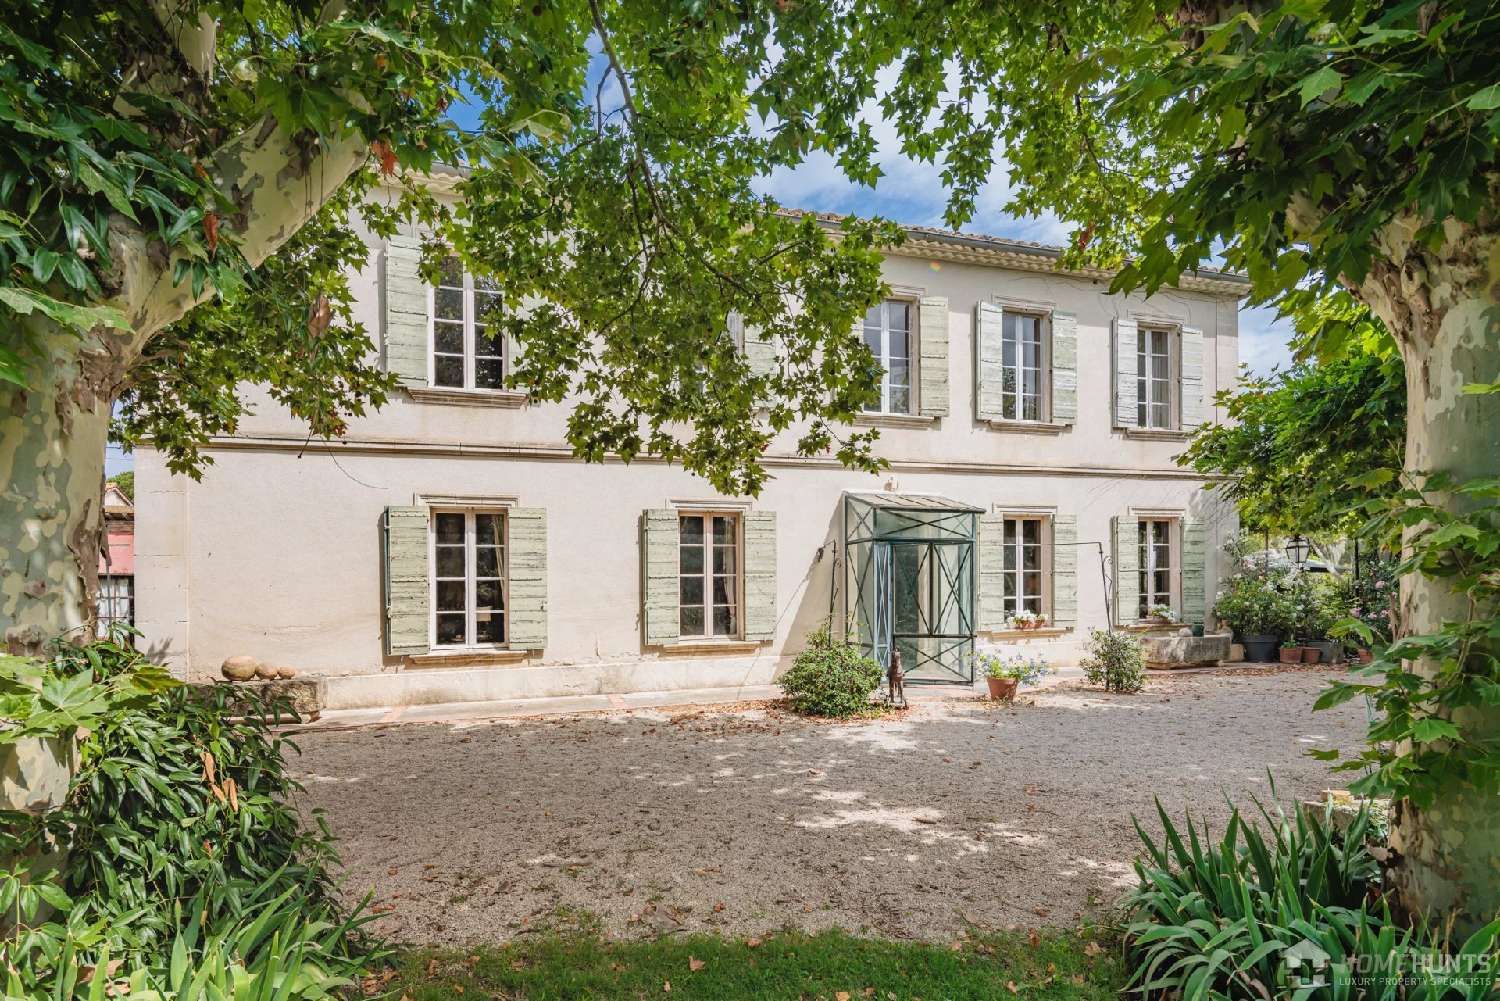  for sale villa Le Vibal Aveyron 1